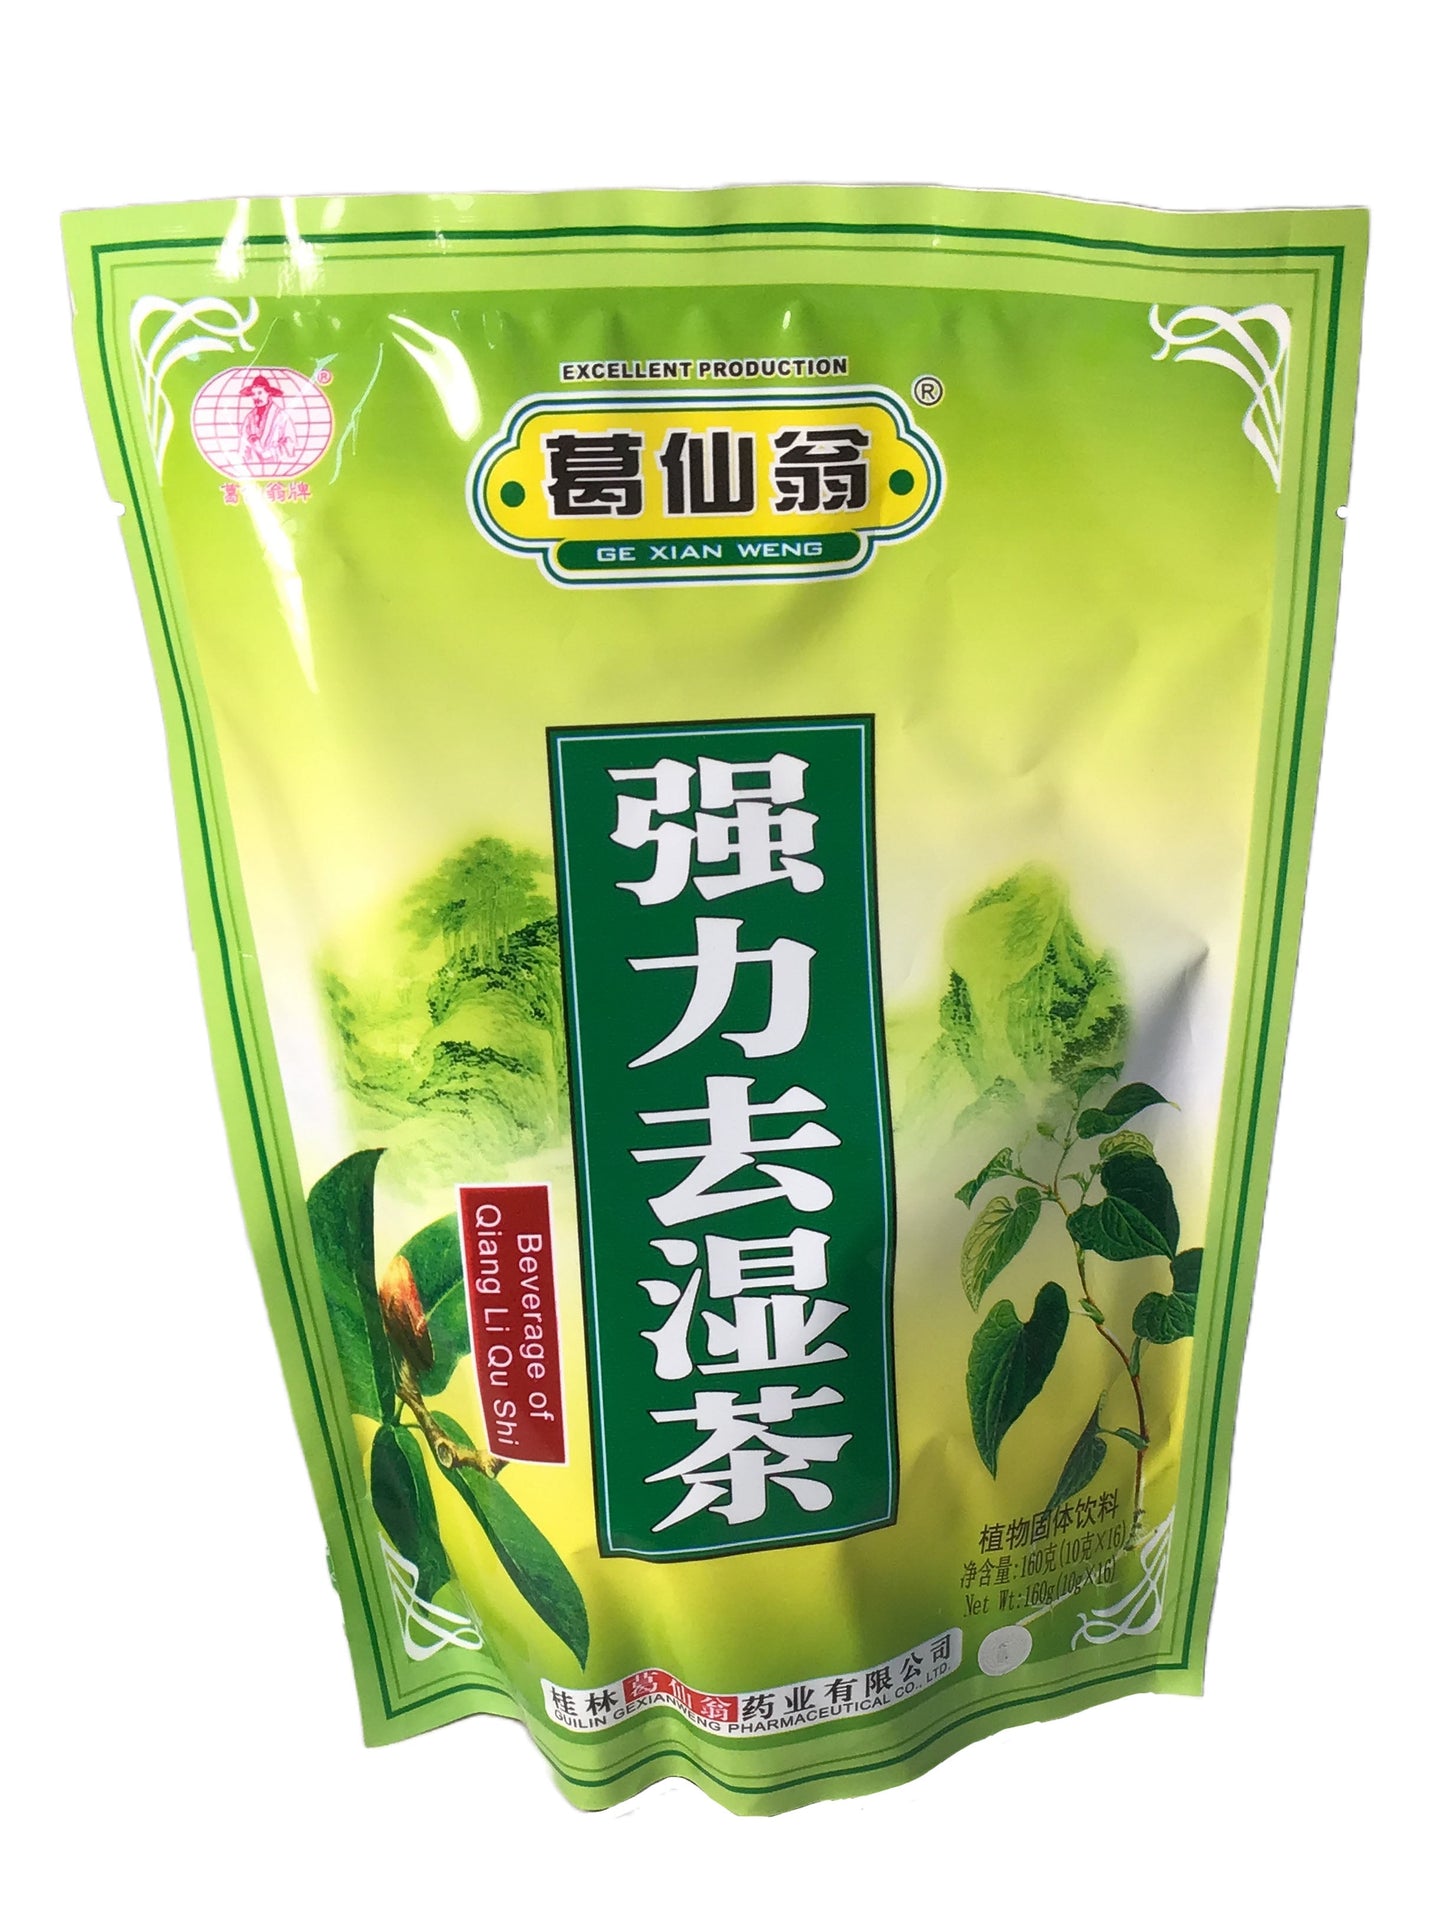 Beverage of Qiang Li Qu Shi (10 grams x 16 bags) 葛仙翁 强力去湿茶 (10克 x 16包)